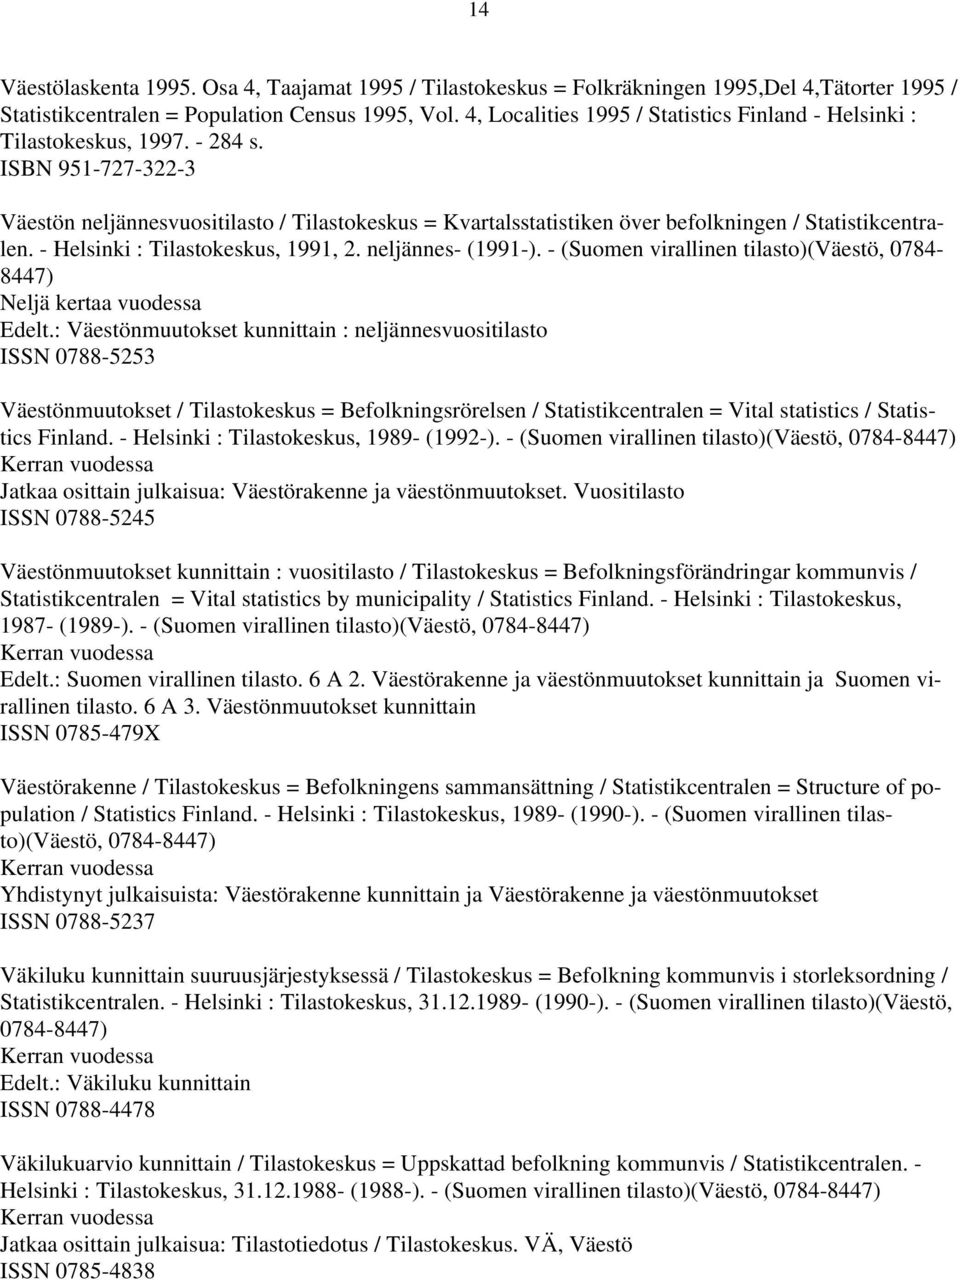 ISBN 951-727-322-3 Väestön neljännesvuositilasto / Tilastokeskus = Kvartalsstatistiken över befolkningen / Statistikcentralen. - Helsinki : Tilastokeskus, 1991, 2. neljännes- (1991-).